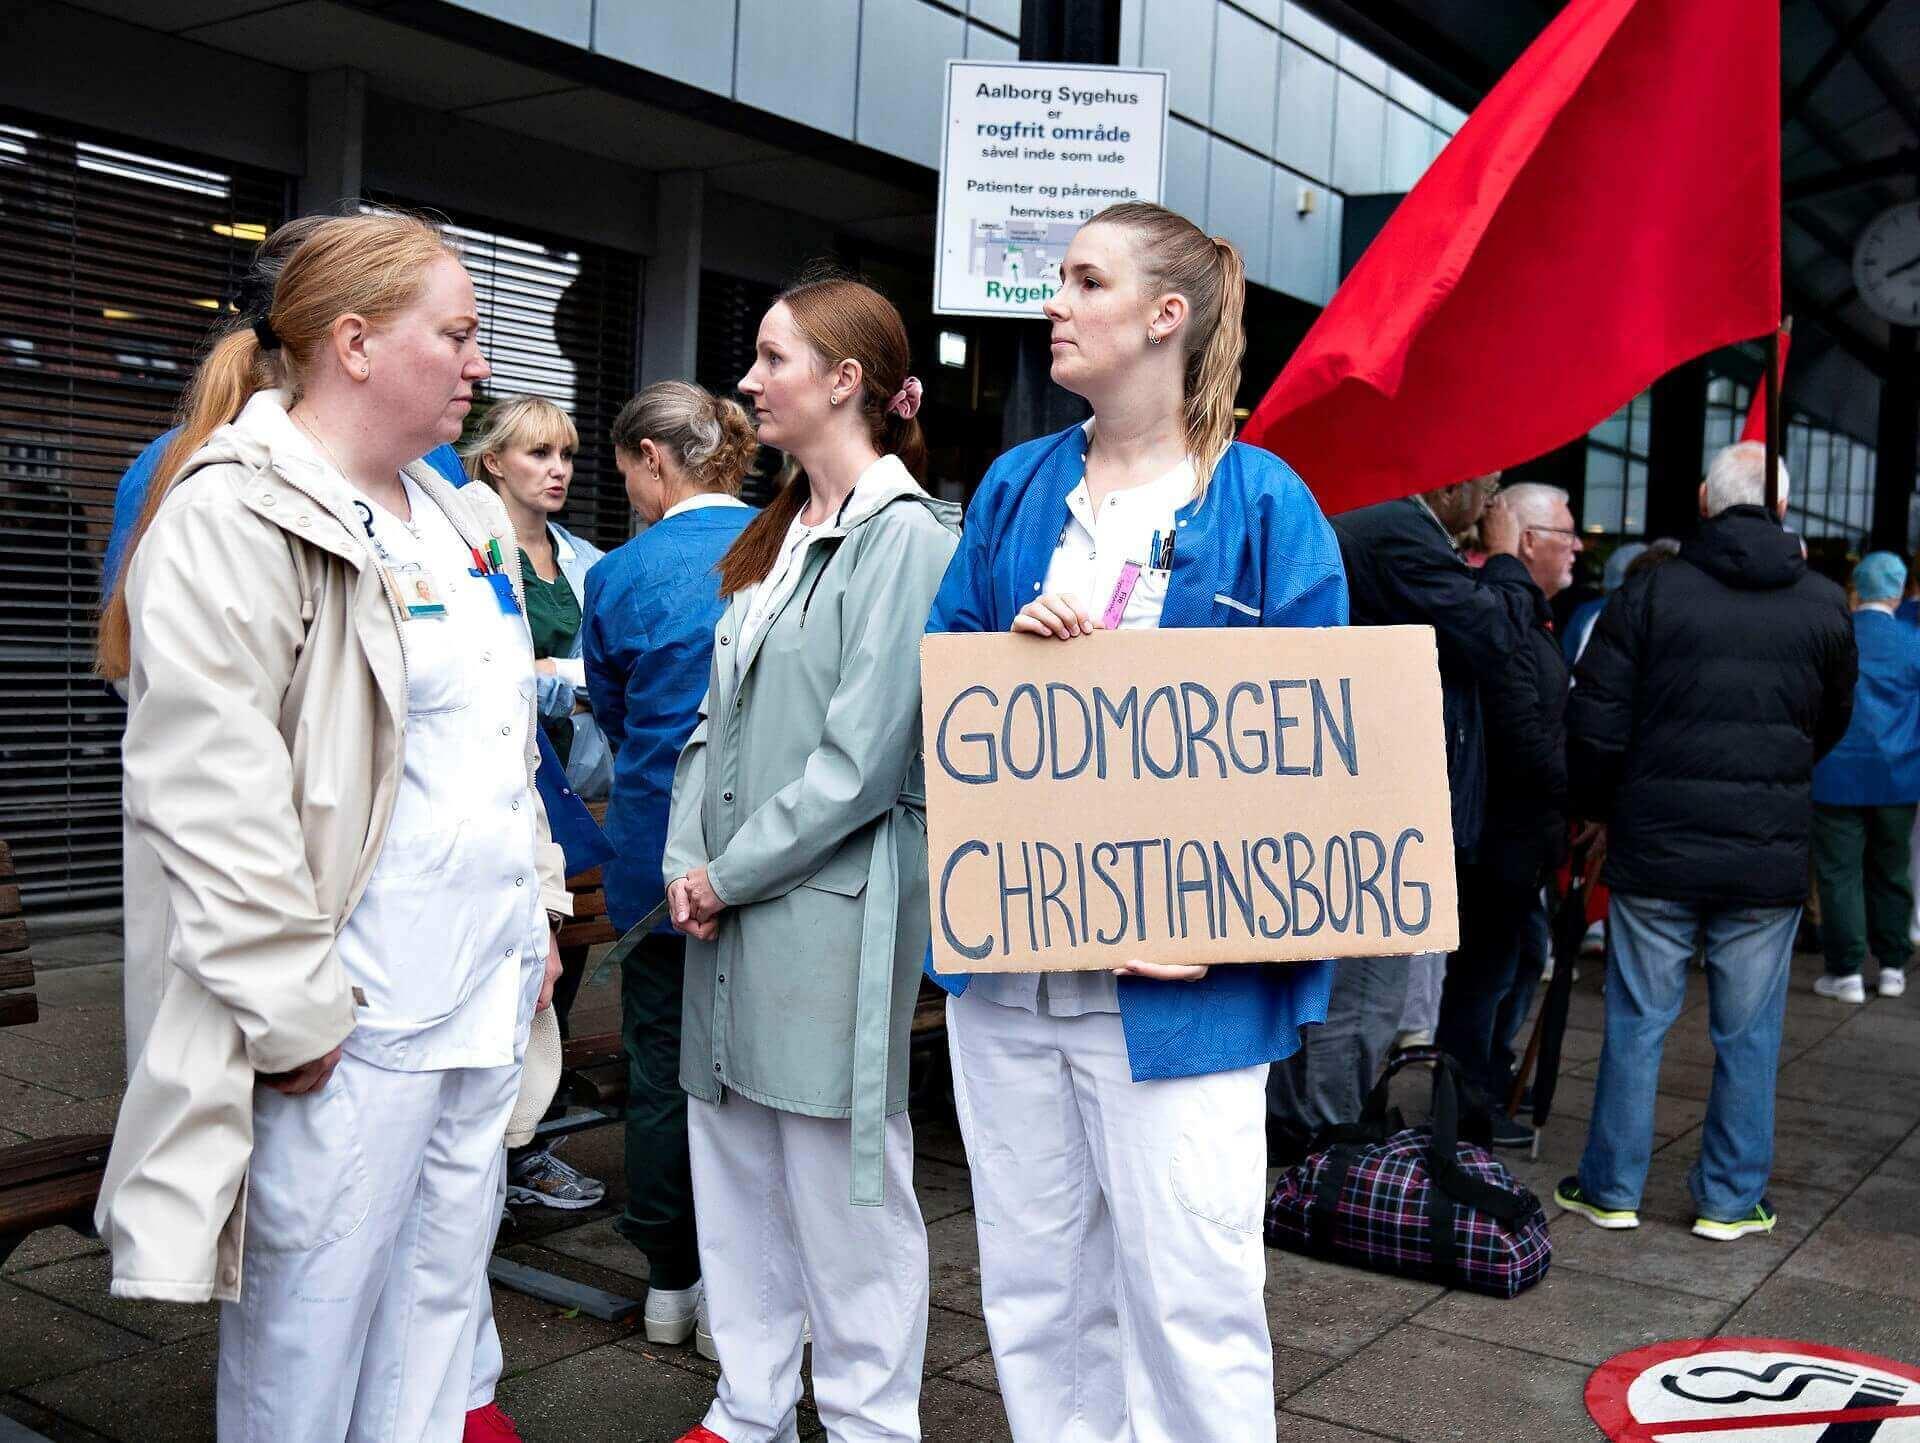 Sygeplejerskerne strejker stadig, og de har forlængst indset, at det reelt ikke er deres arbejdsgivere i de danske regioner, der afgør, om de kan få bedre løn og arbejdsforhold.